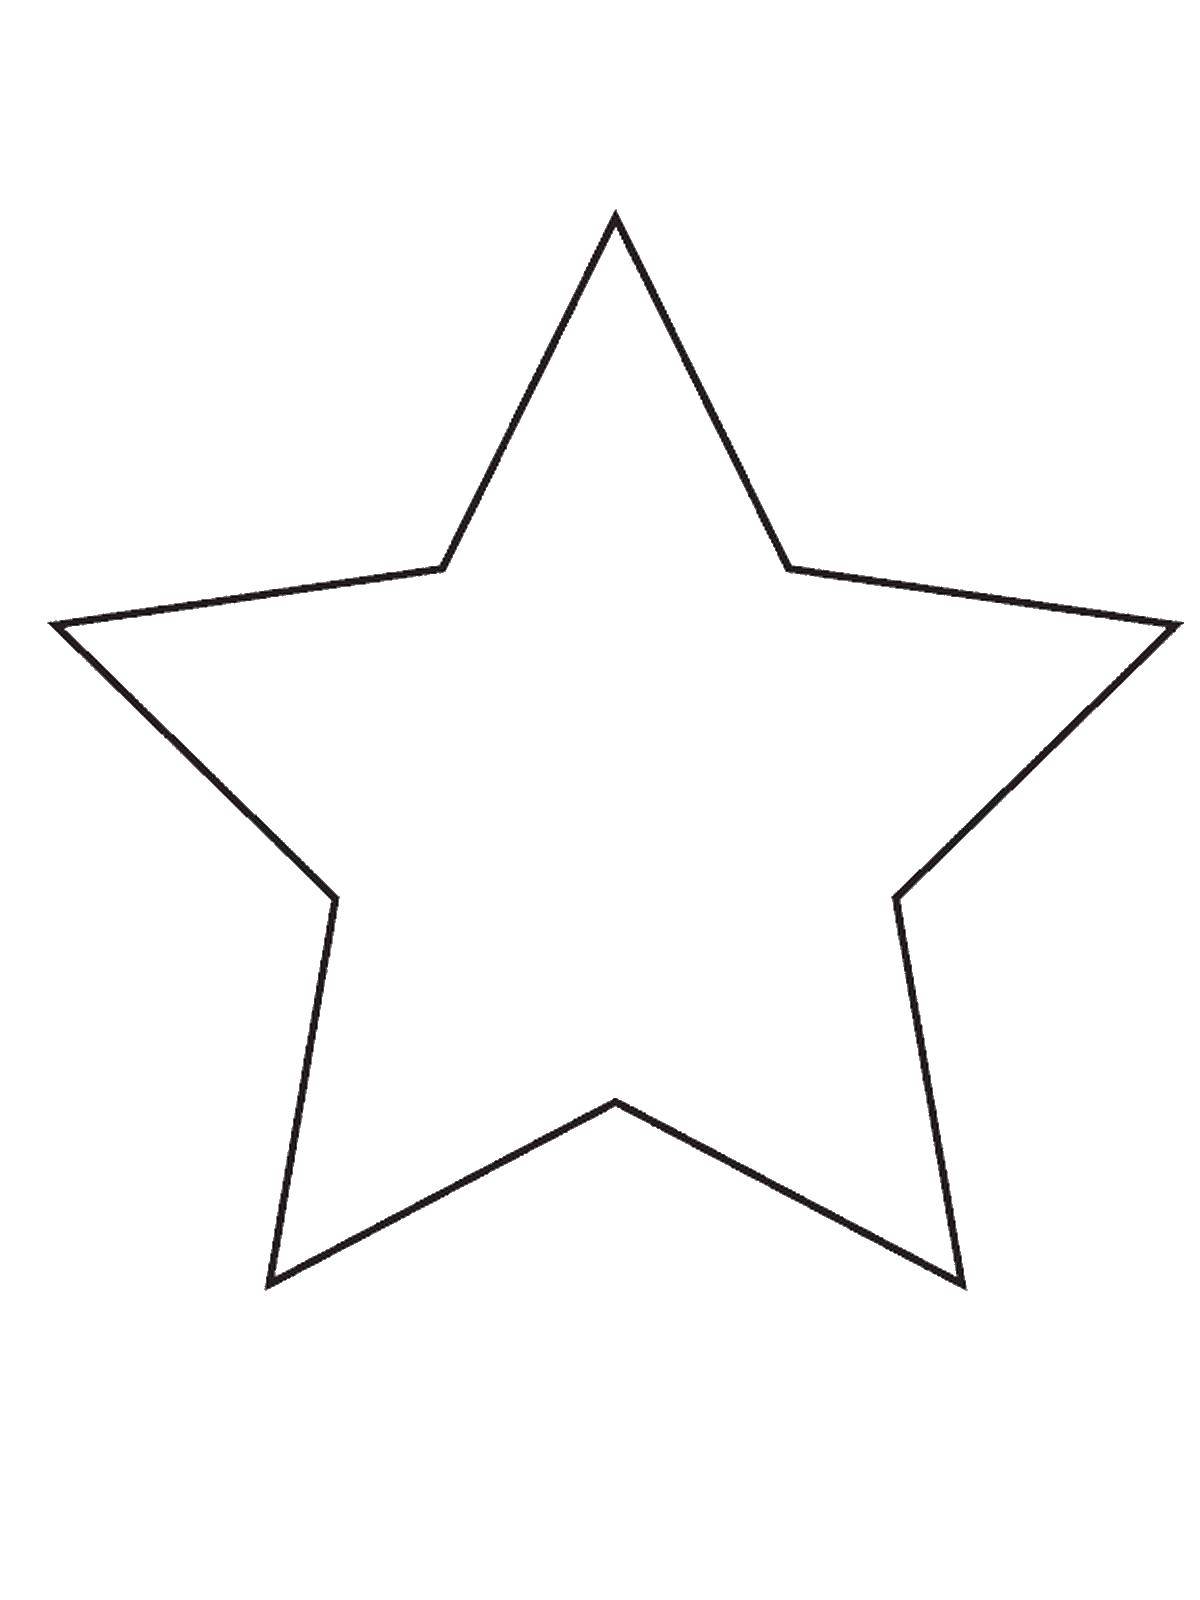 Название: Раскраска Звезда. Категория: раскраски из фигур. Теги: звезда.